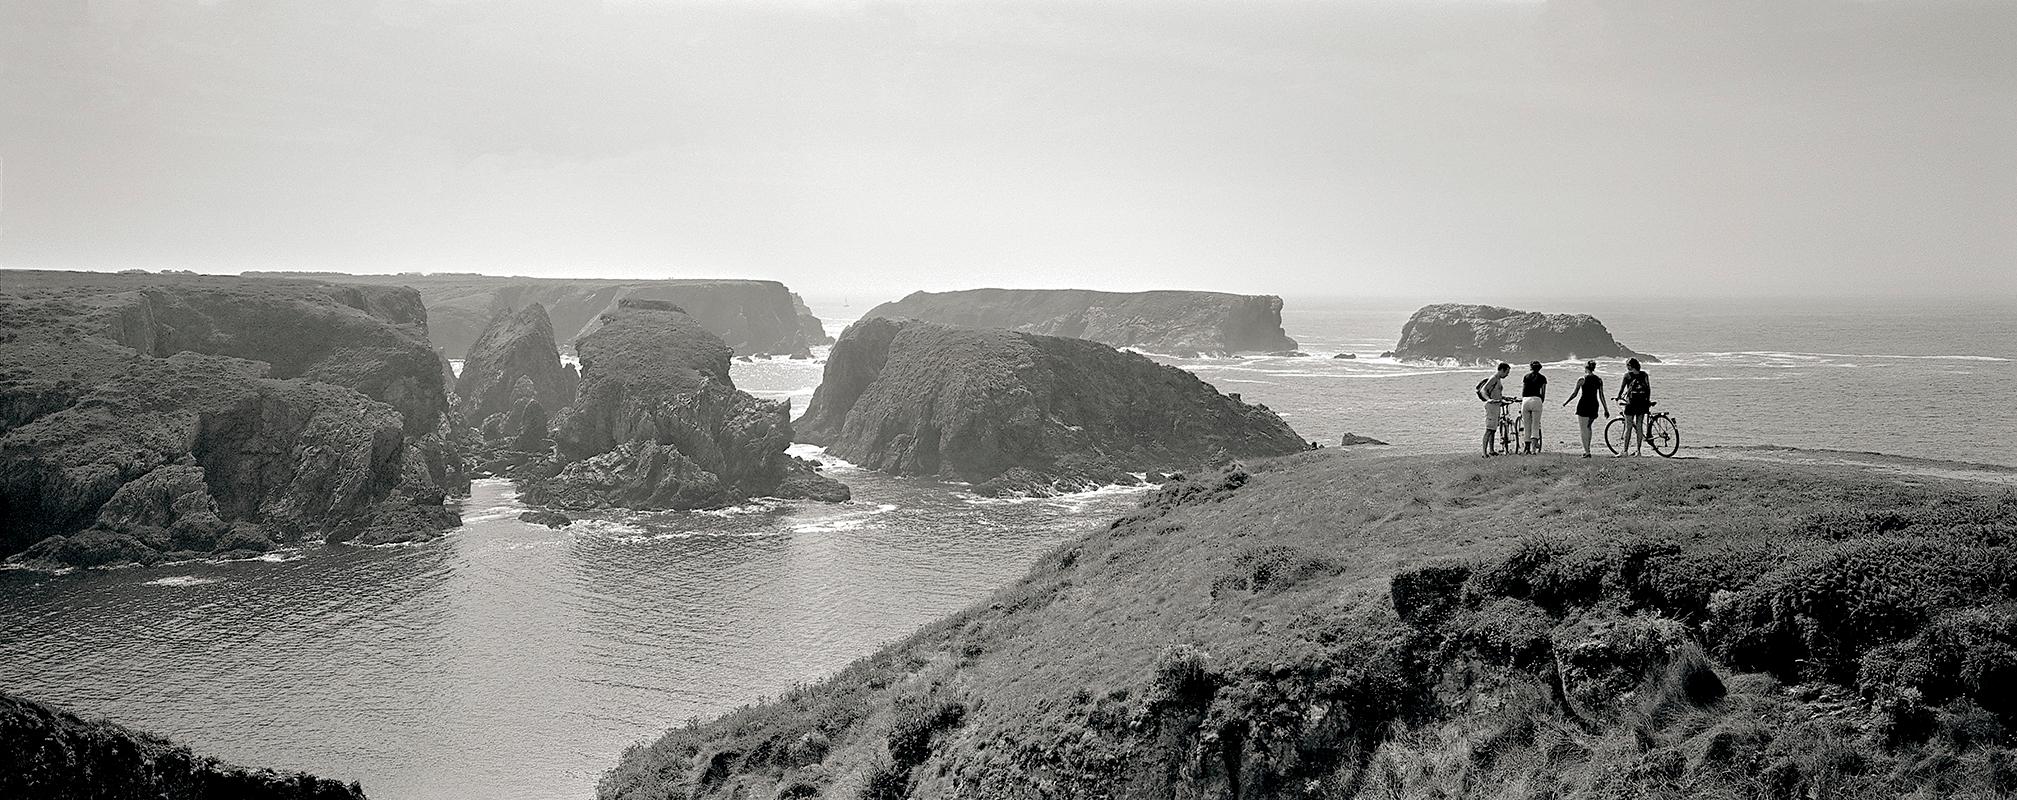 panorama black and white